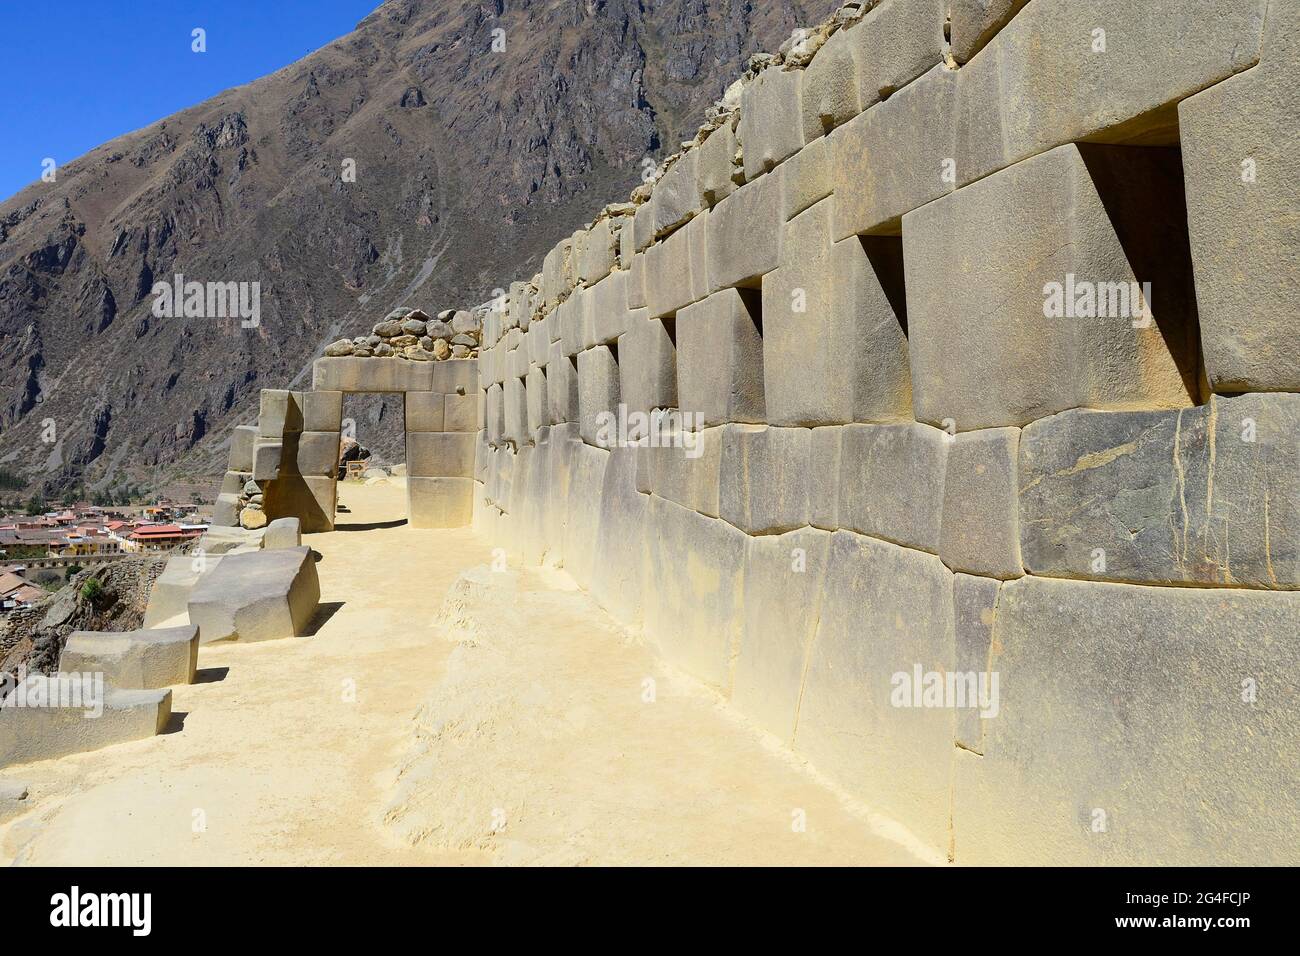 Porte et mur avec niches dans les ruines de l'Inca, Ollantaytambo, région de Cusco, province d'Urubamba, Pérou Banque D'Images